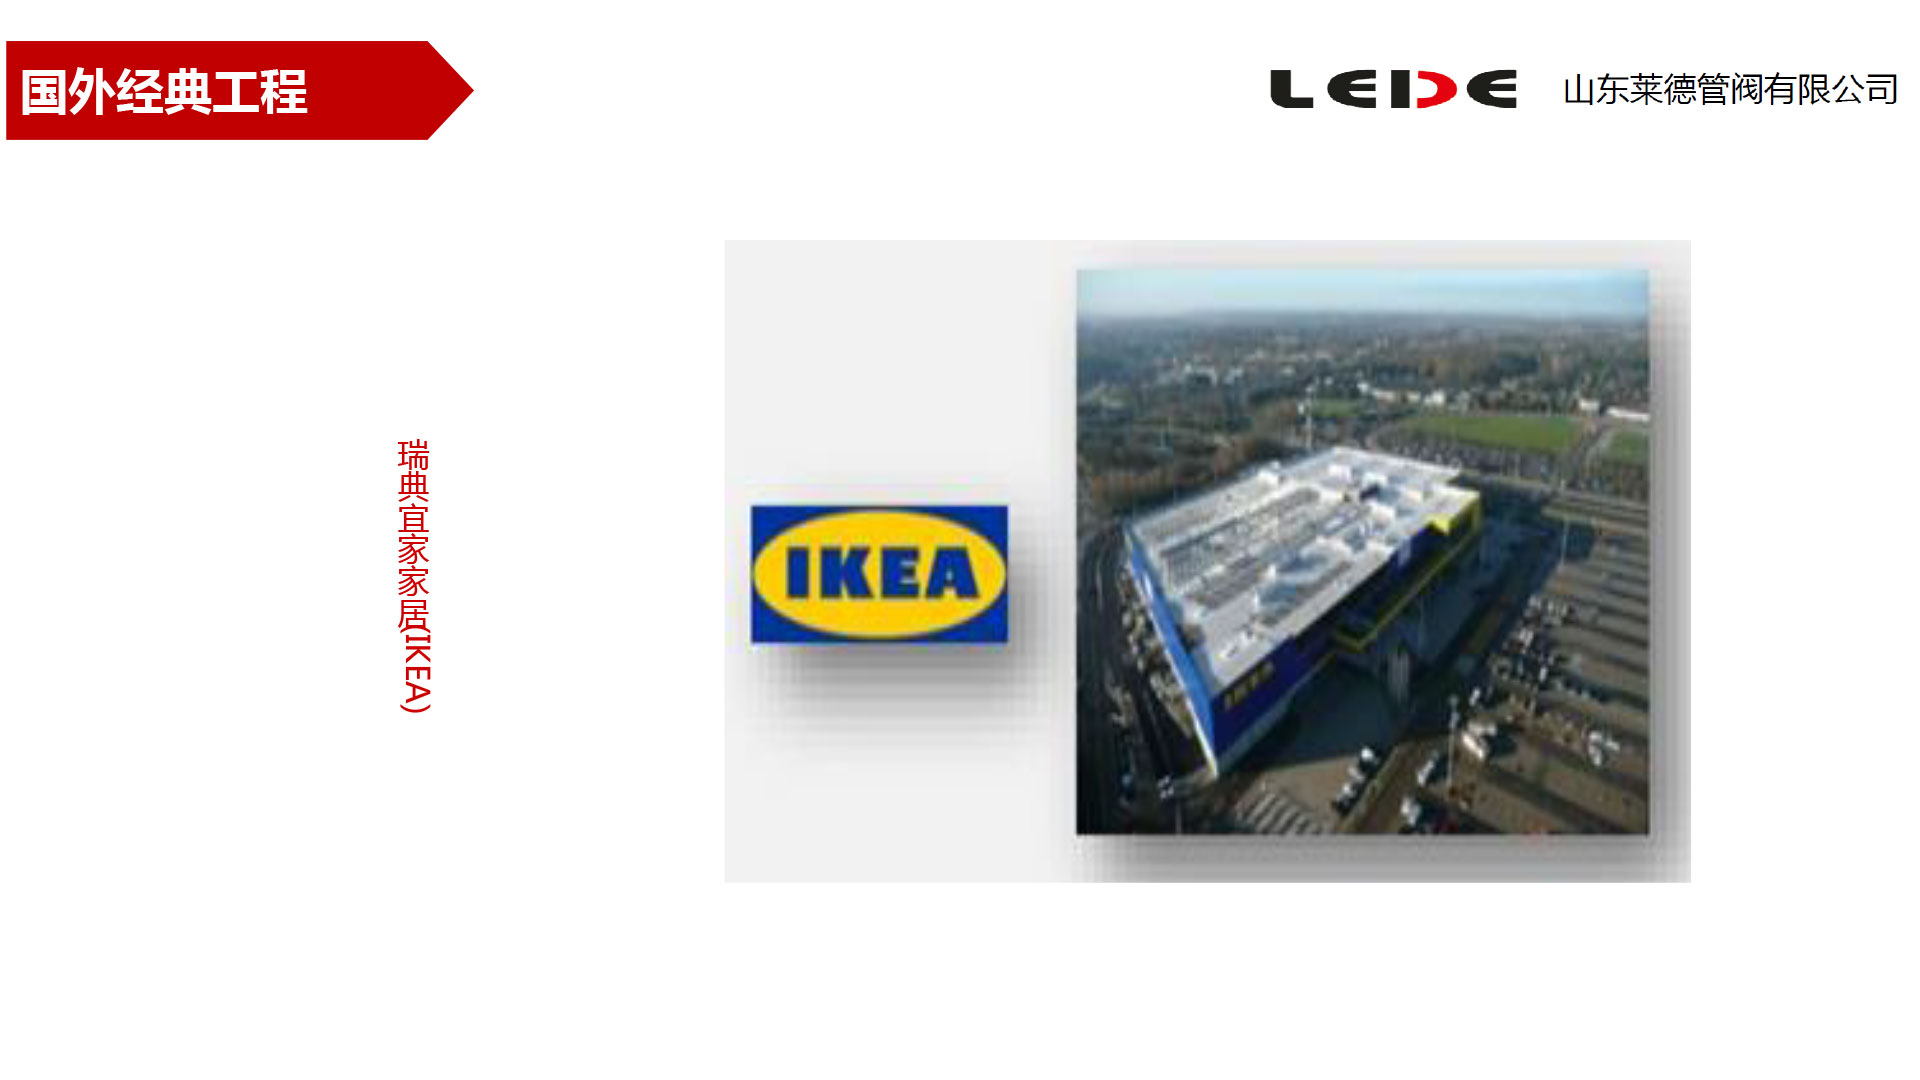 瑞典宜家家居(IKEA)